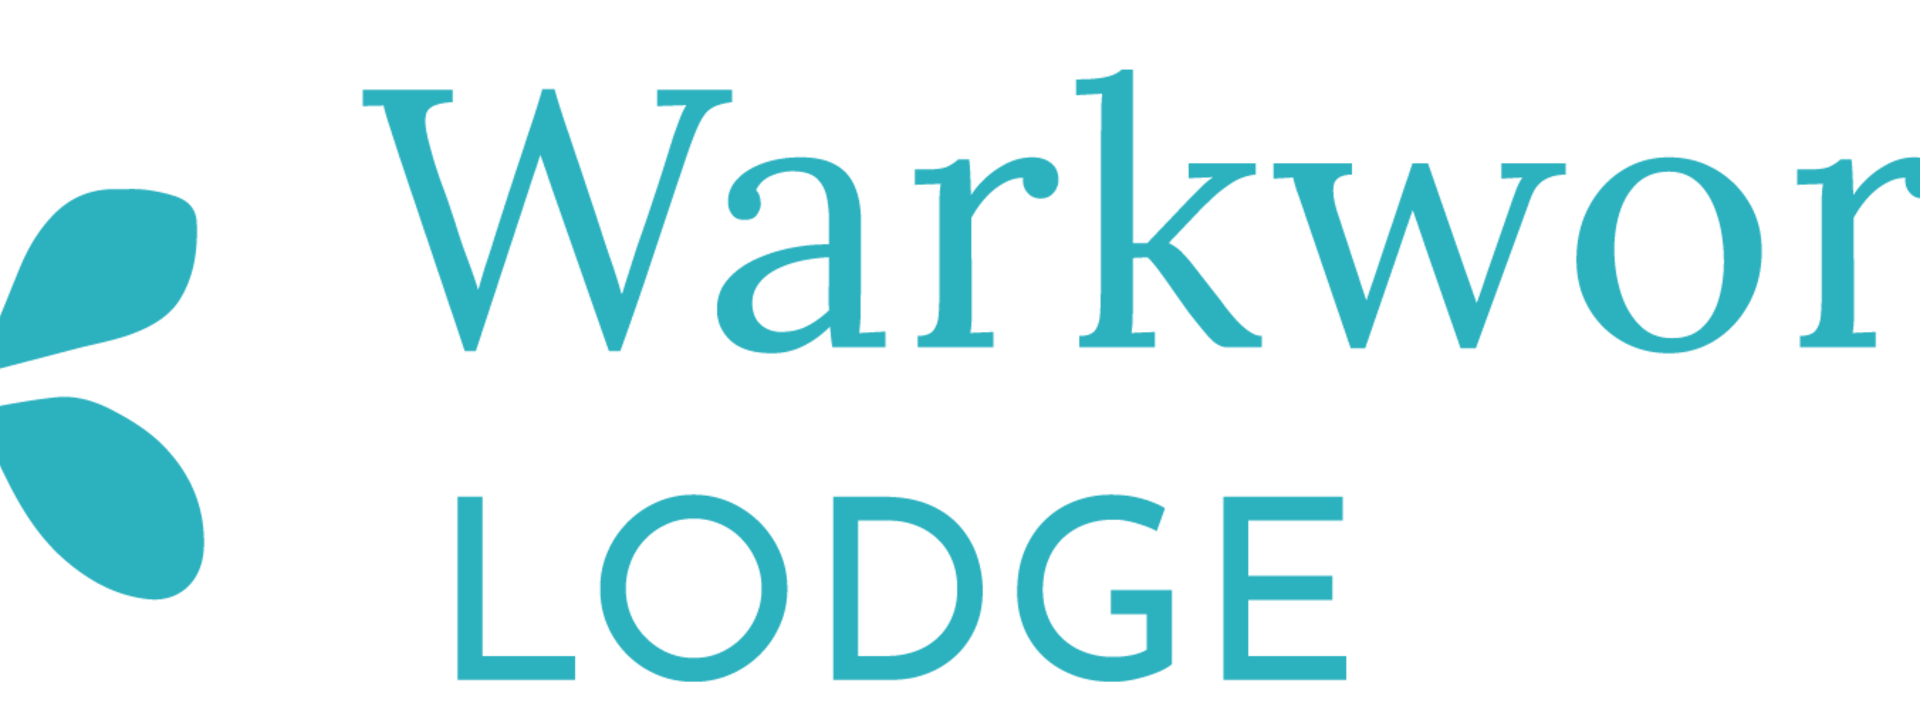 warkworth-lodge-logo-landscape-01.png